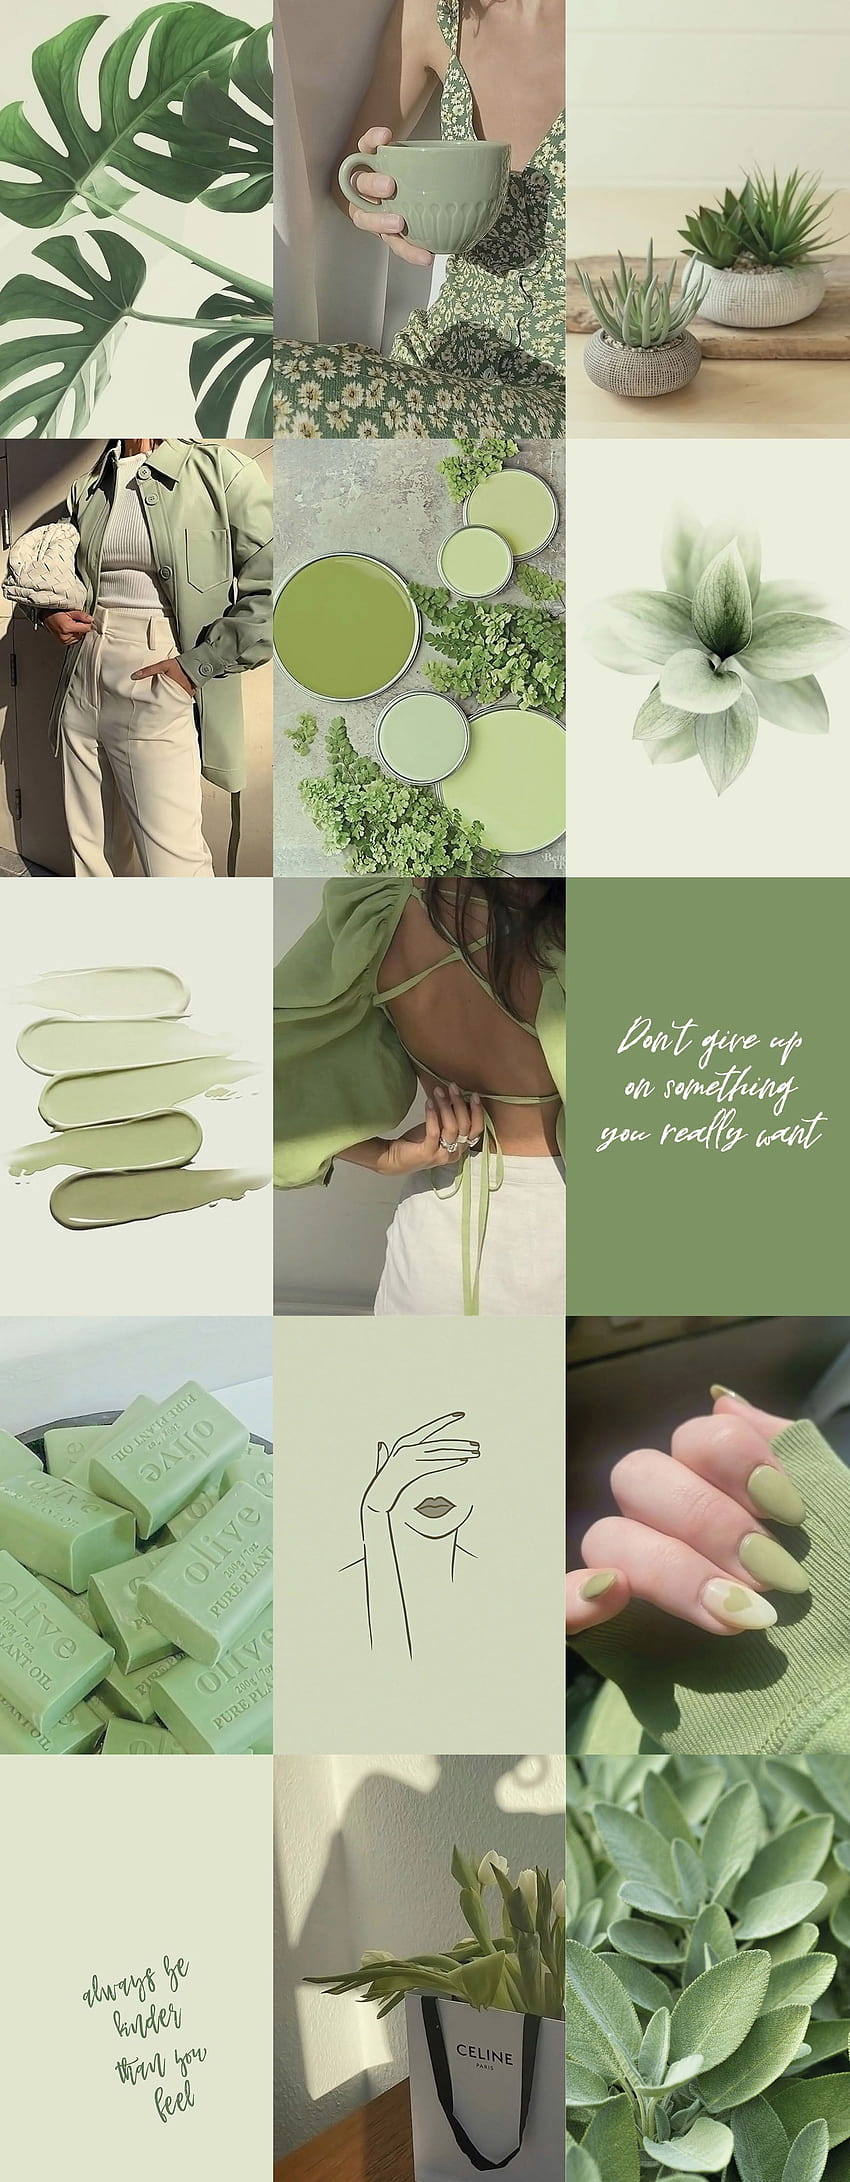 100pcs Sage Green Dinding Kolase Kit 2 Boho Estetika Lembut. Inggris Raya. IPhone hijau mint, iPhone hijau, Hijau mint, Sage Green Collage wallpaper ponsel HD